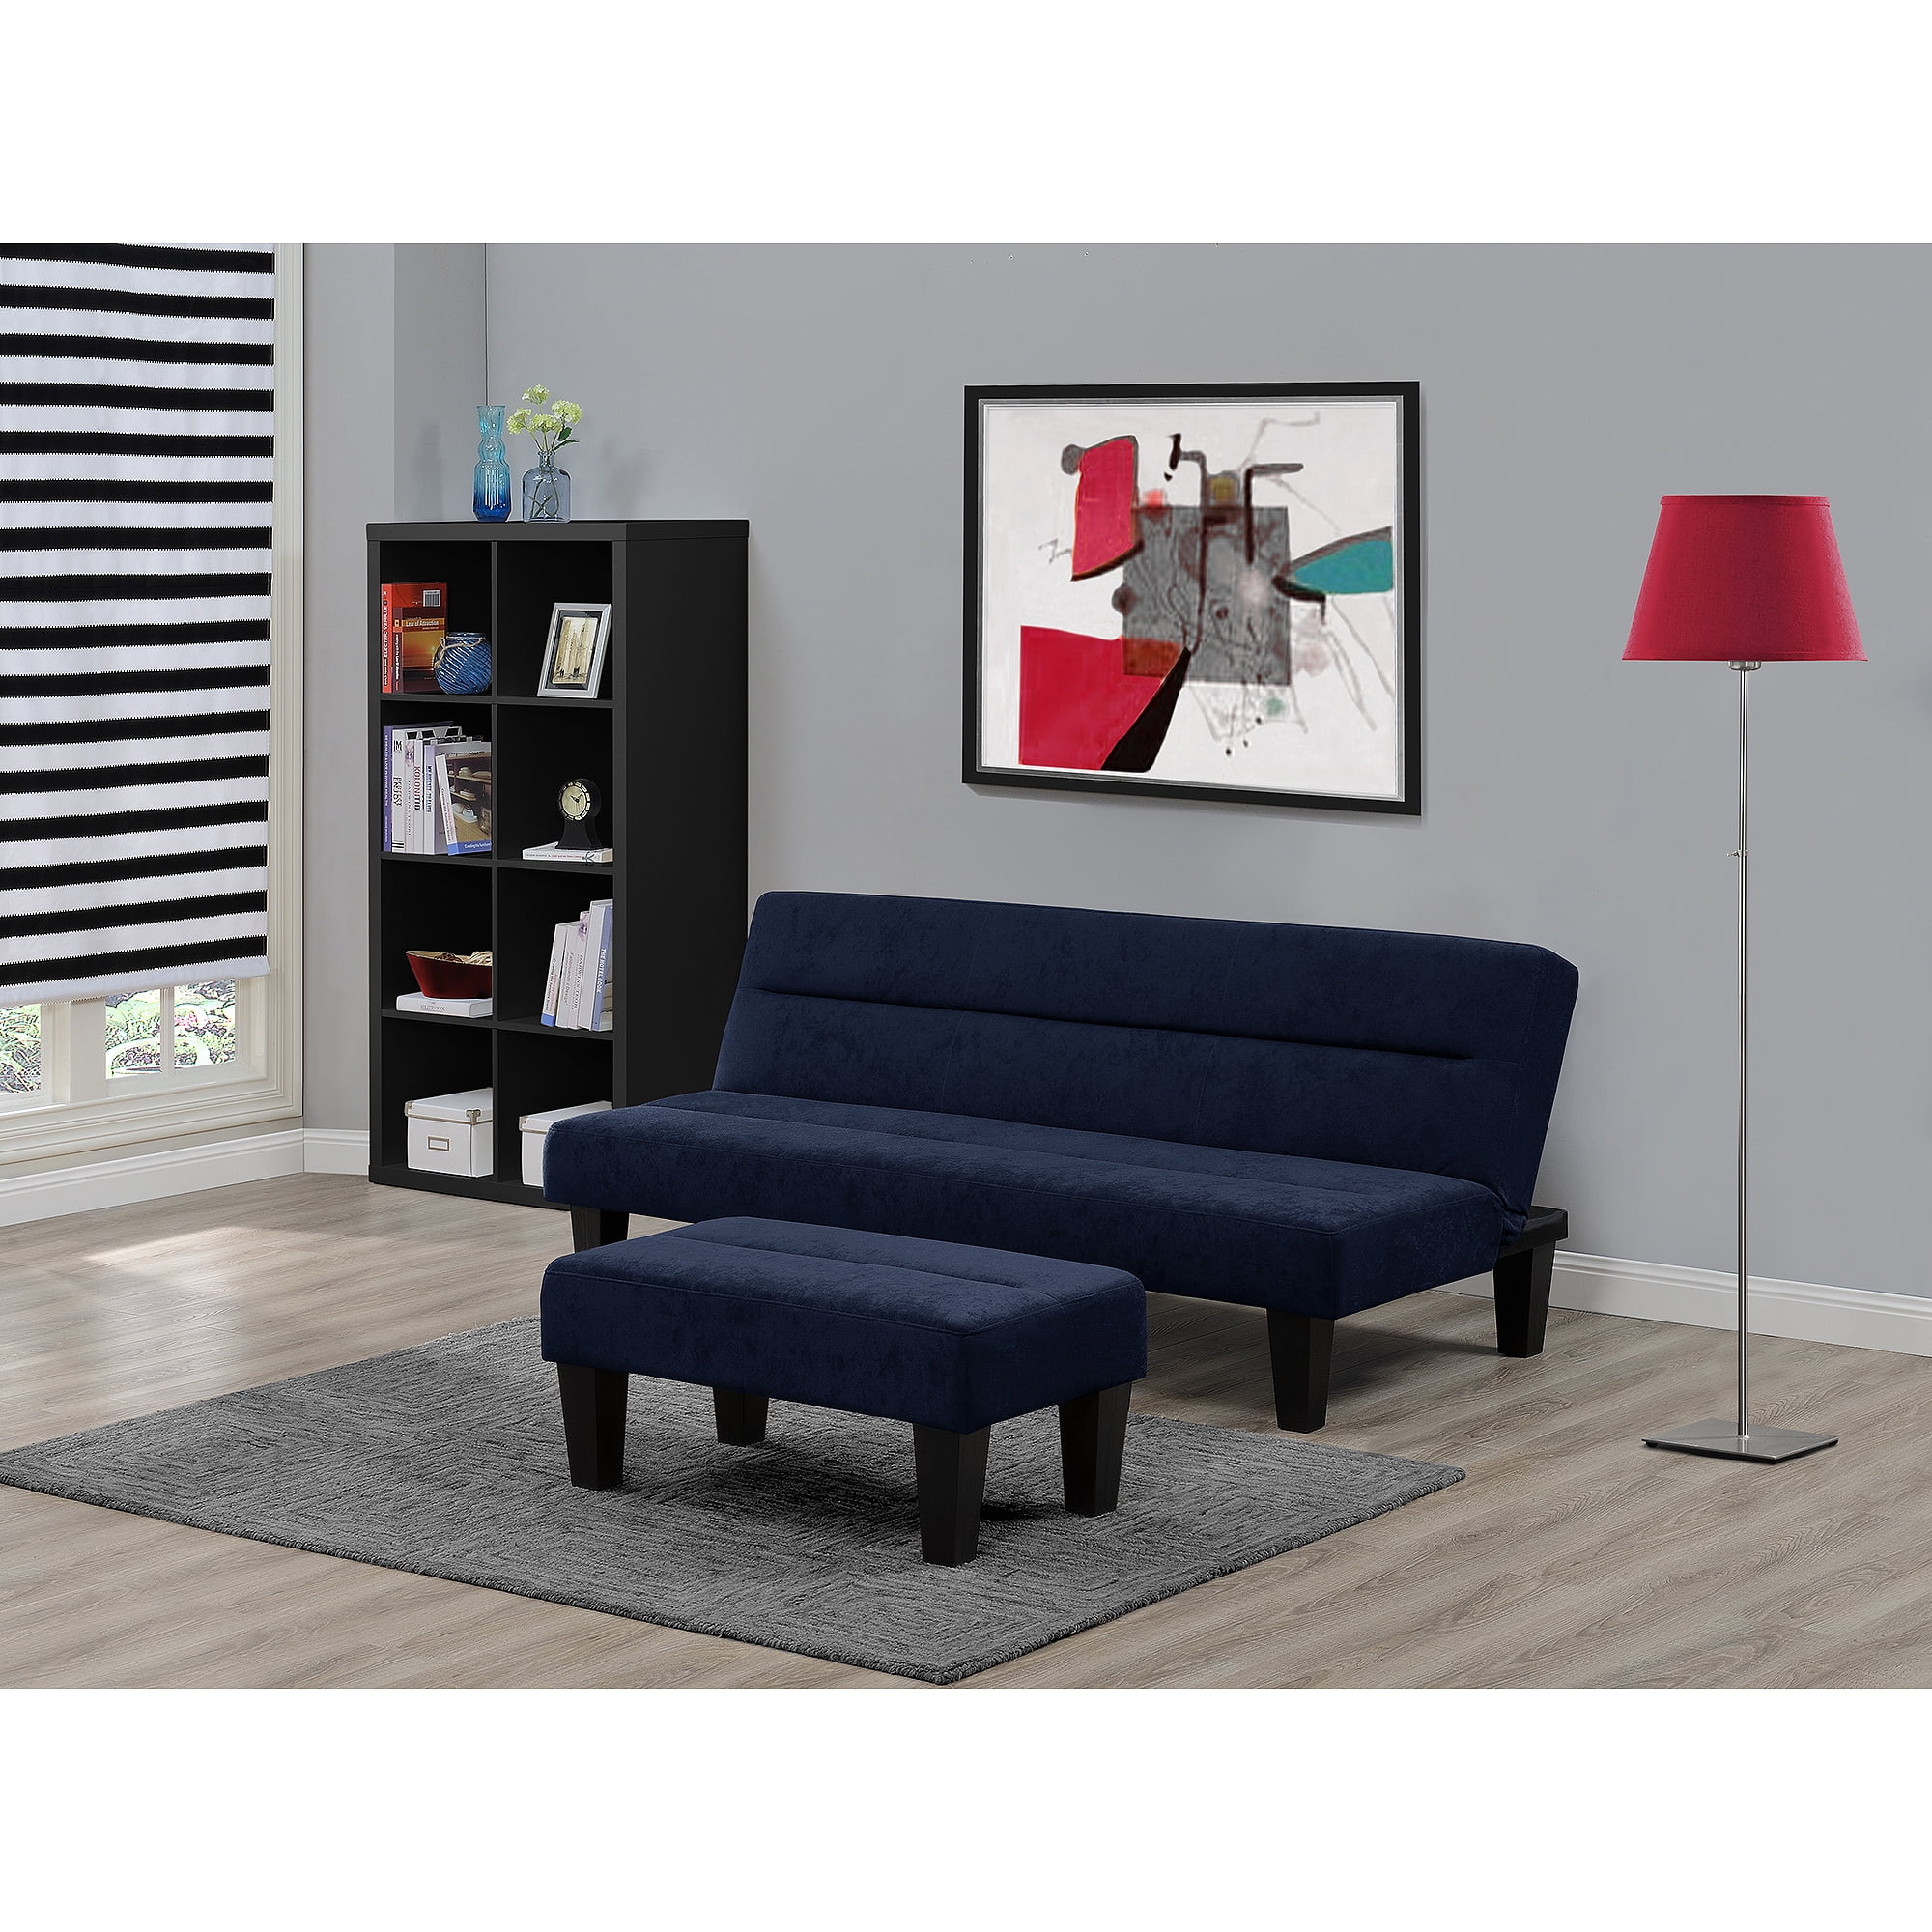 Kebo Living Room Furniture Collection  Walmart.com